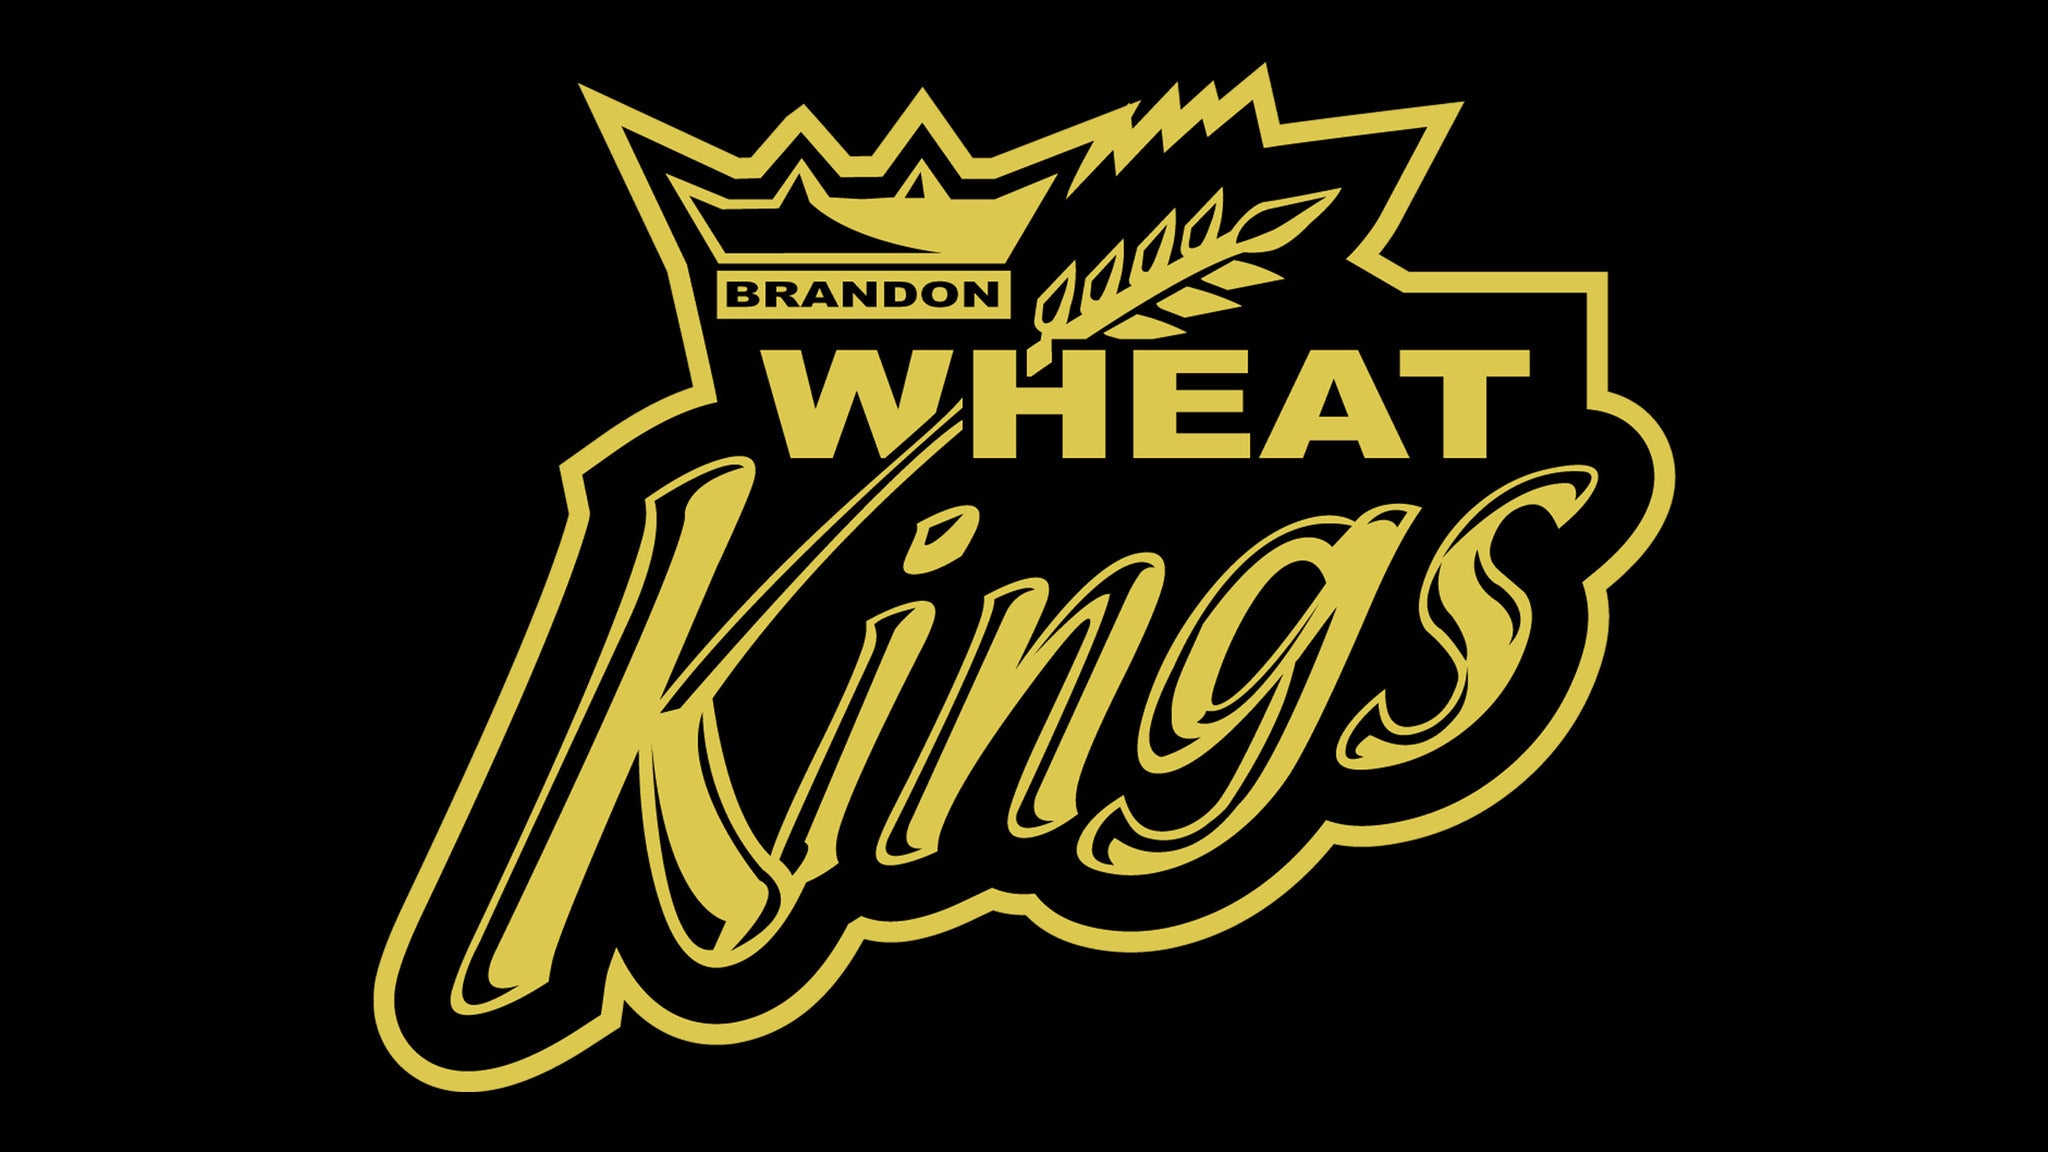 Brandon Wheat Kings vs. Moose Jaw Warriors in Brandon promo photo for Family 4 Pack presale offer code